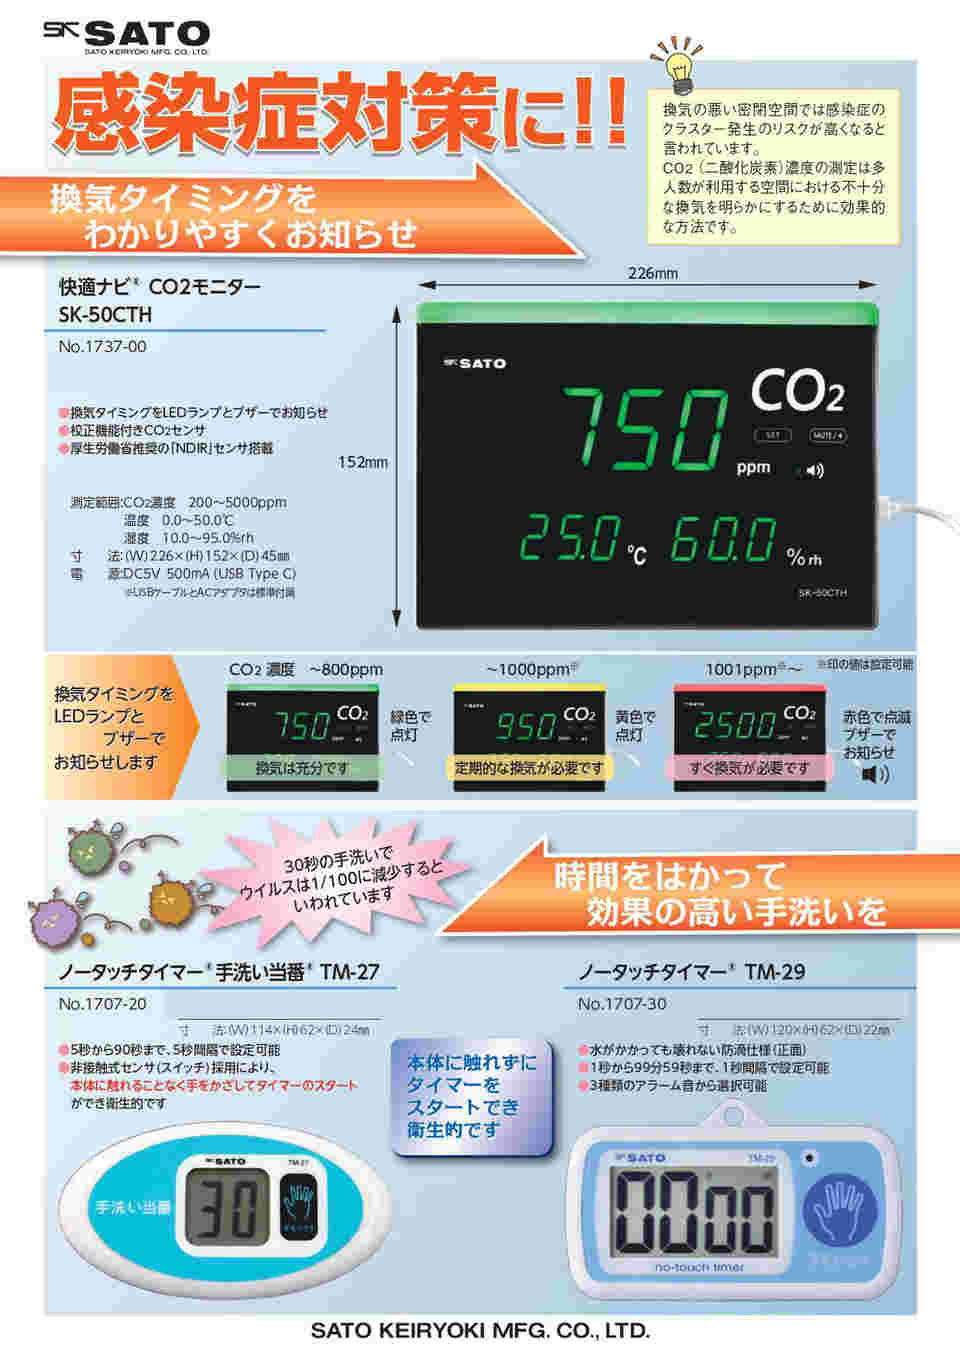 64-9051-66 快適ナビ CO2モニター SK-50CTH 【AXEL】 アズワン